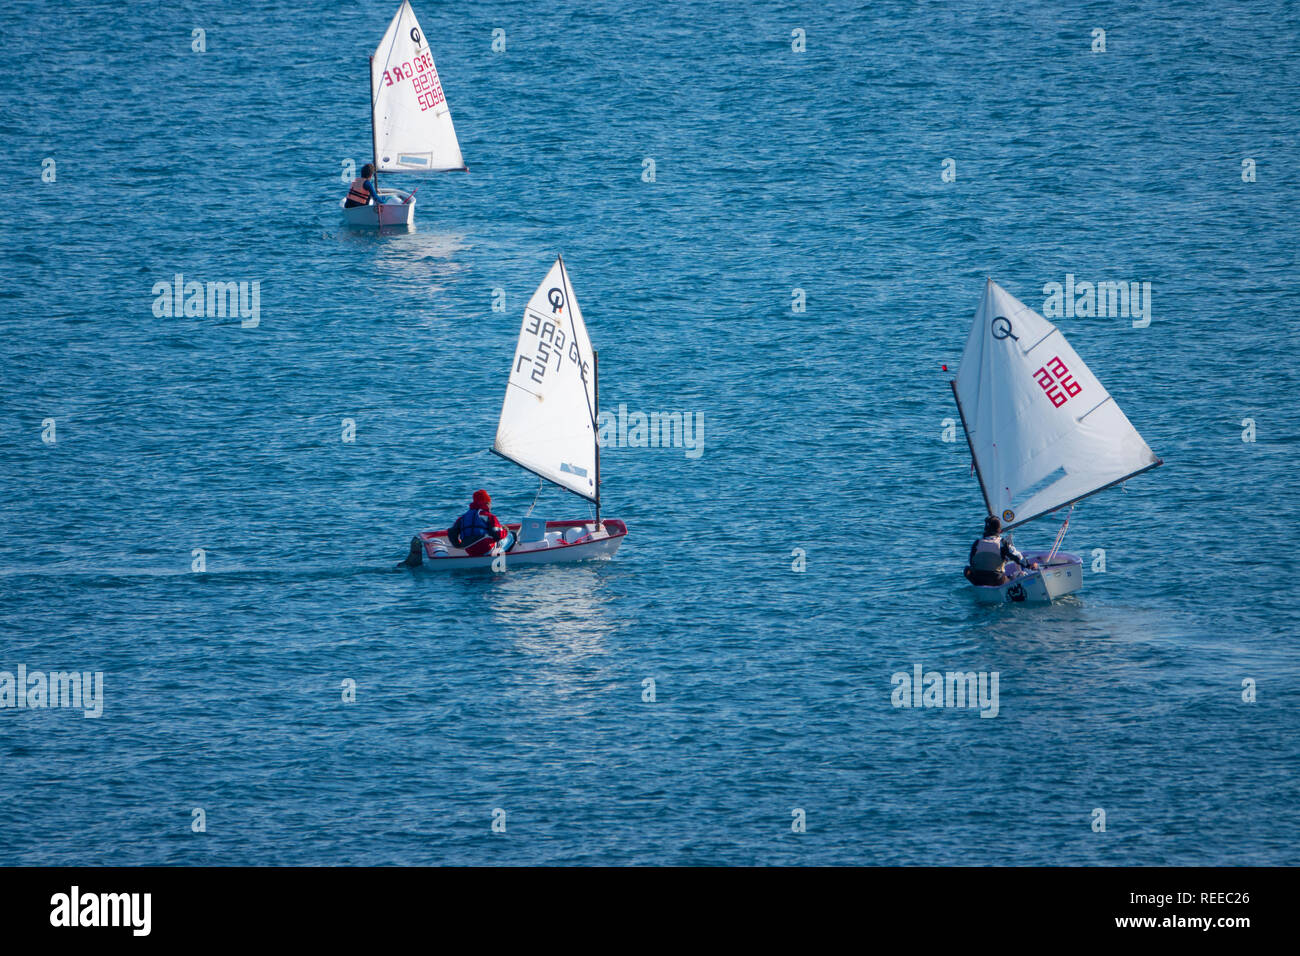 Europa Griechenland Korfu Ionische Meer wettbewerbsfähig Segeln in einzelne Person Segelboote Opti J Segelboote Stockfoto